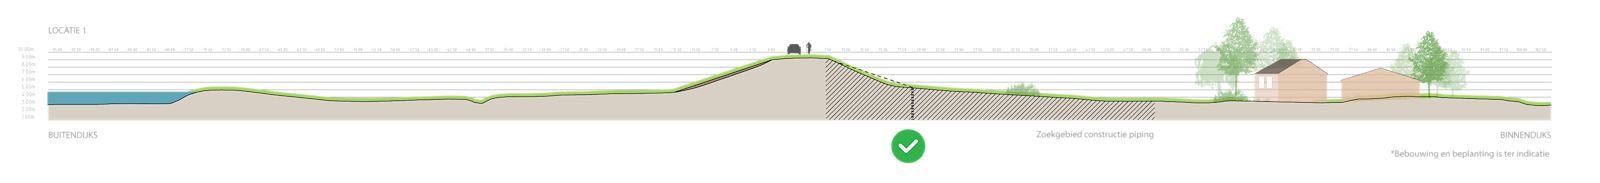 Deze afbeelding laat een doorsnede zien van de onderzochte oplossing verticale pipingmaatregel (constructie)